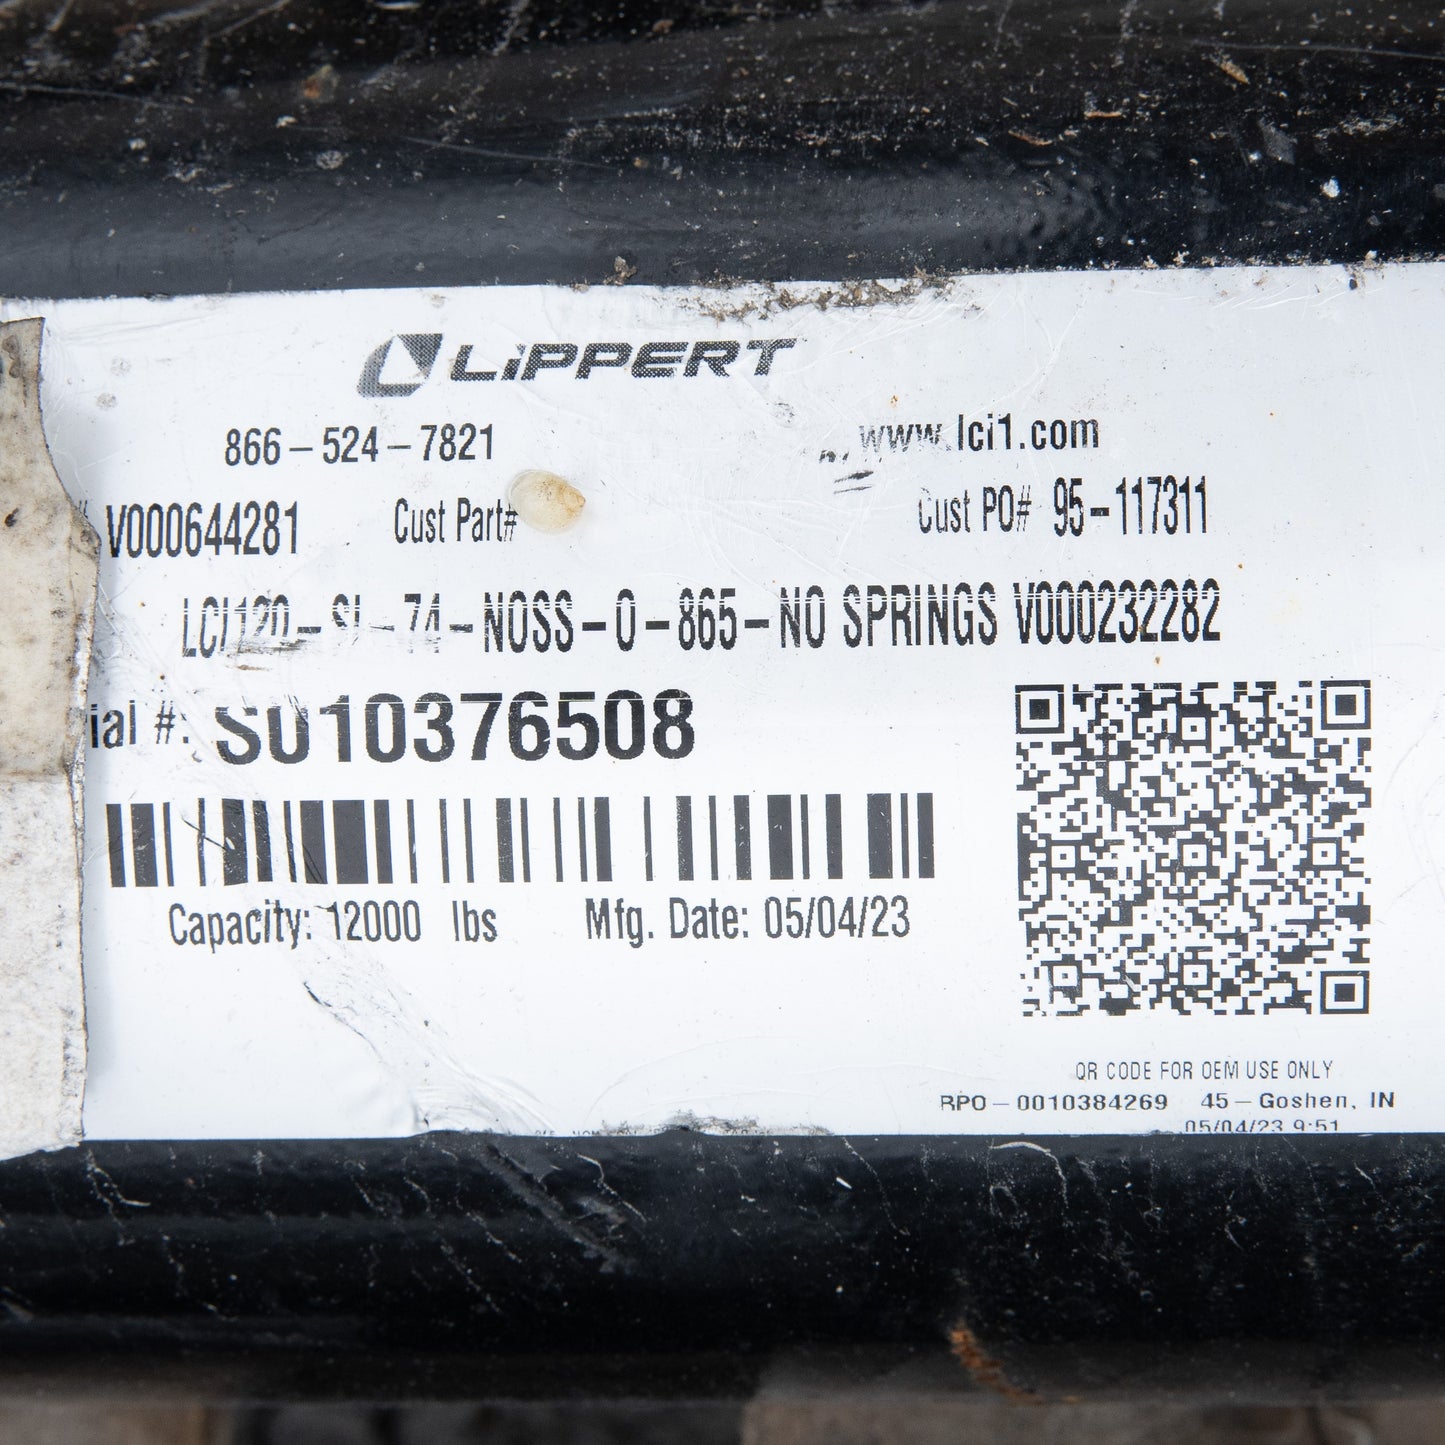 Eje de remolque Lippert de 12 k - Rueda guía de 12000 lb y 8 lengüetas - Artículos vendidos tal como están 